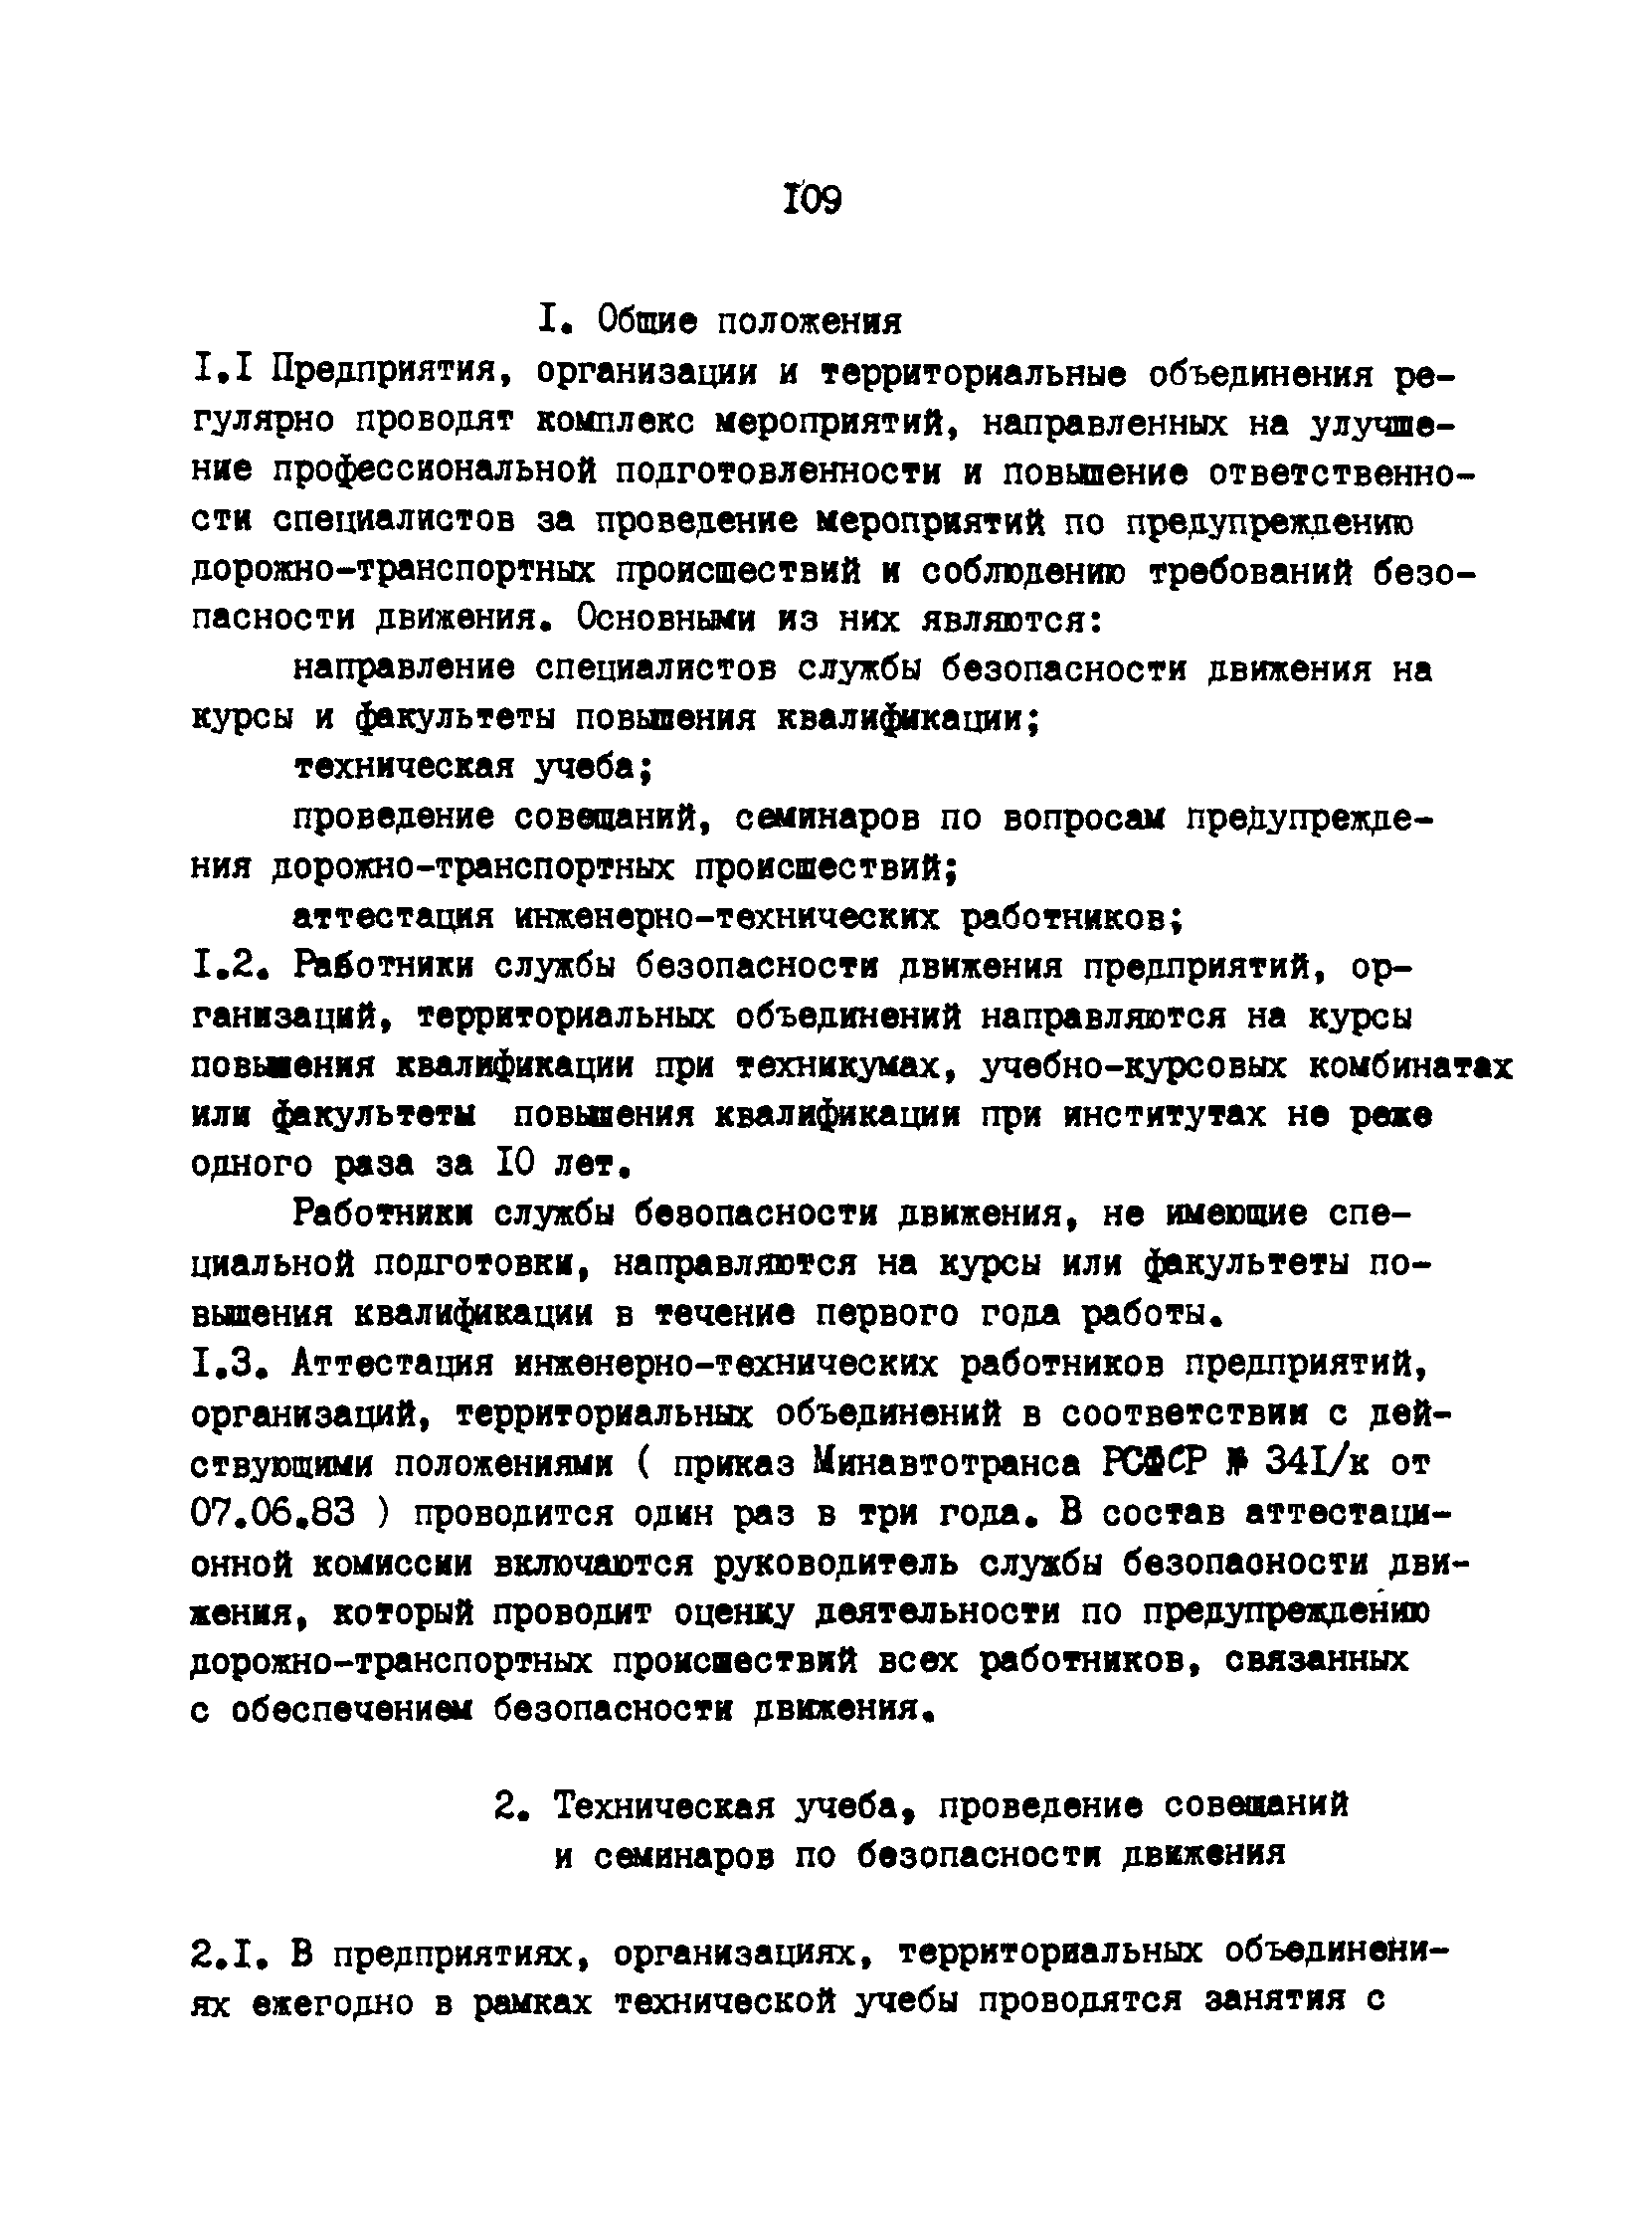 РД 200-РСФСР-12-0071-86-11